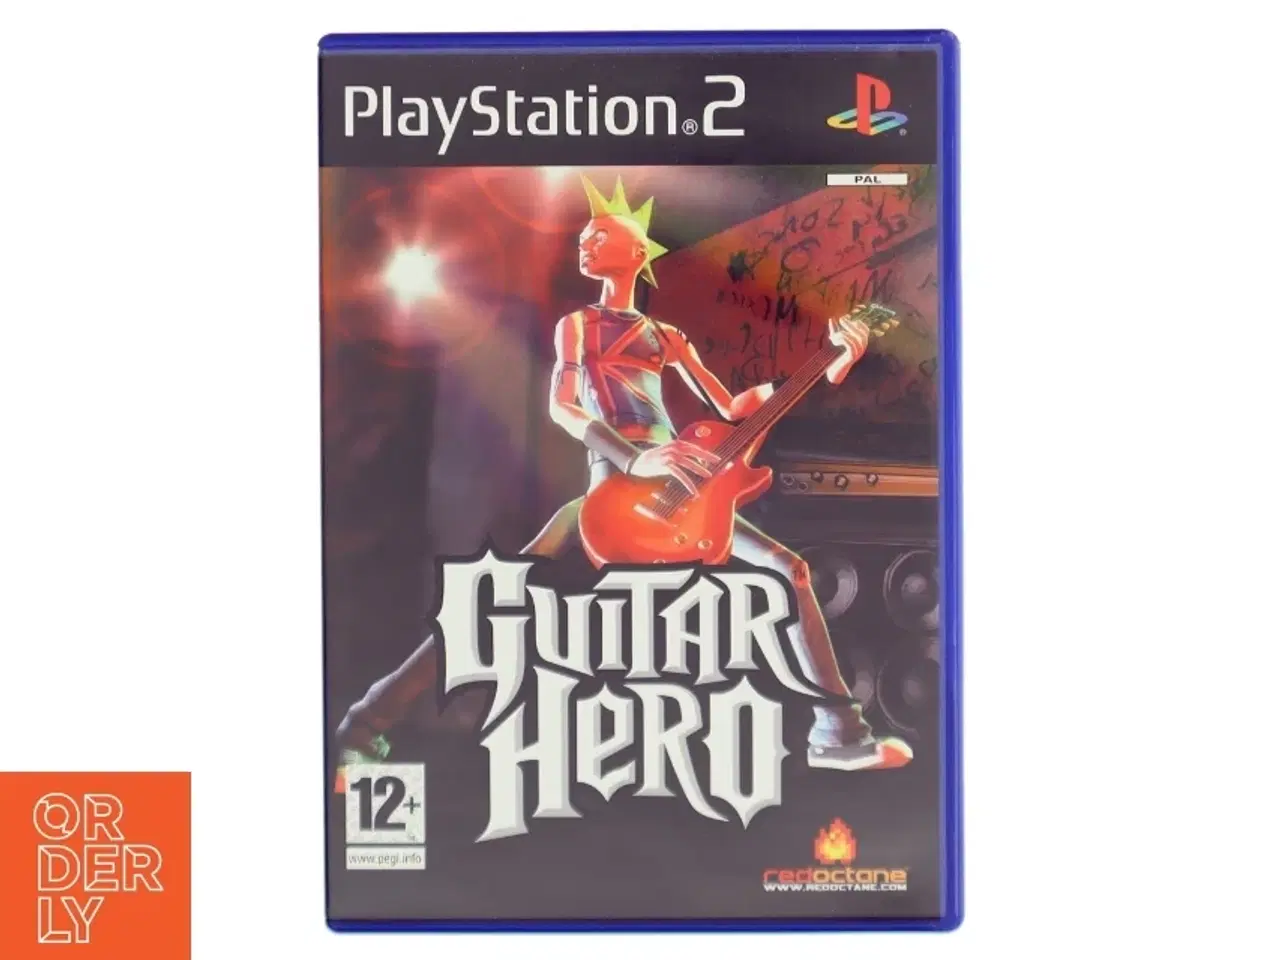 Billede 1 - Guitar Hero PS2 spil fra RedOctane